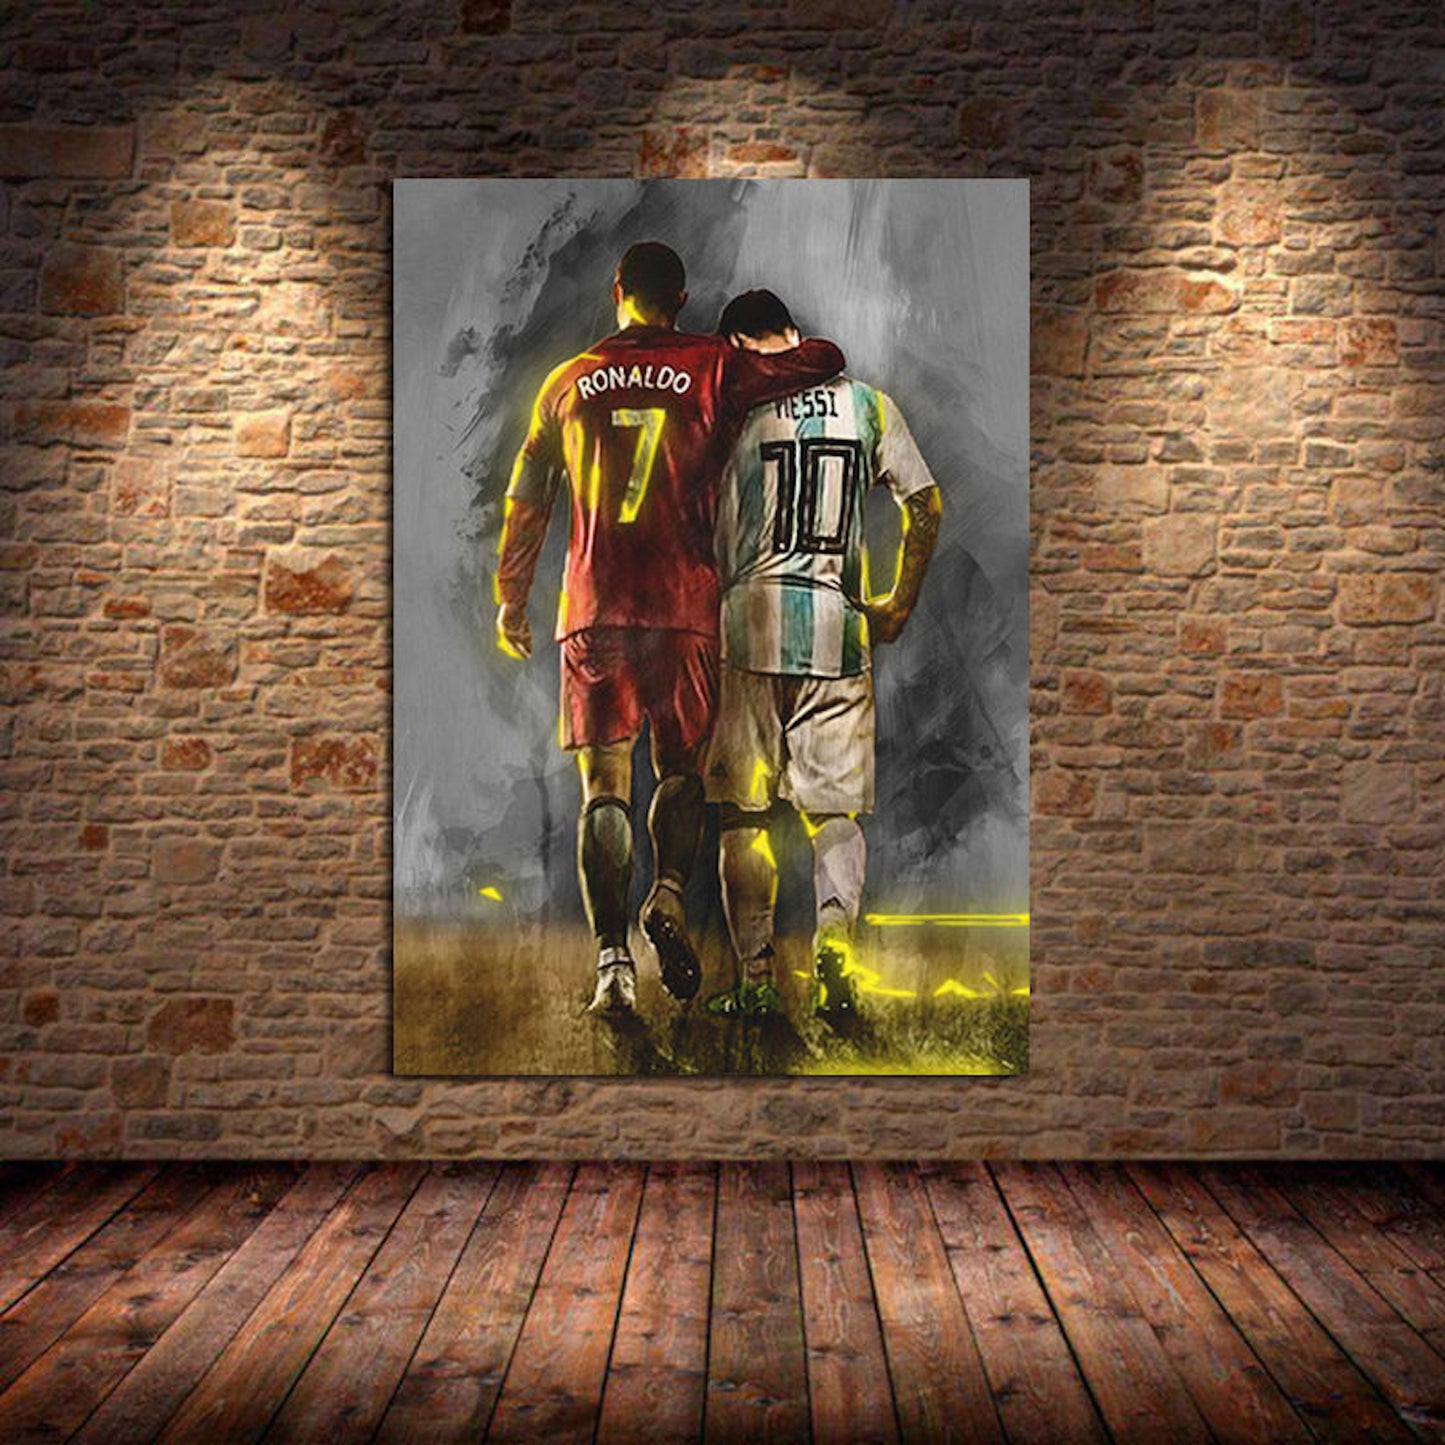 Fußball andere Messi ohne – und als Rah Lionel Print Spieler Poster justgoodmood Deko